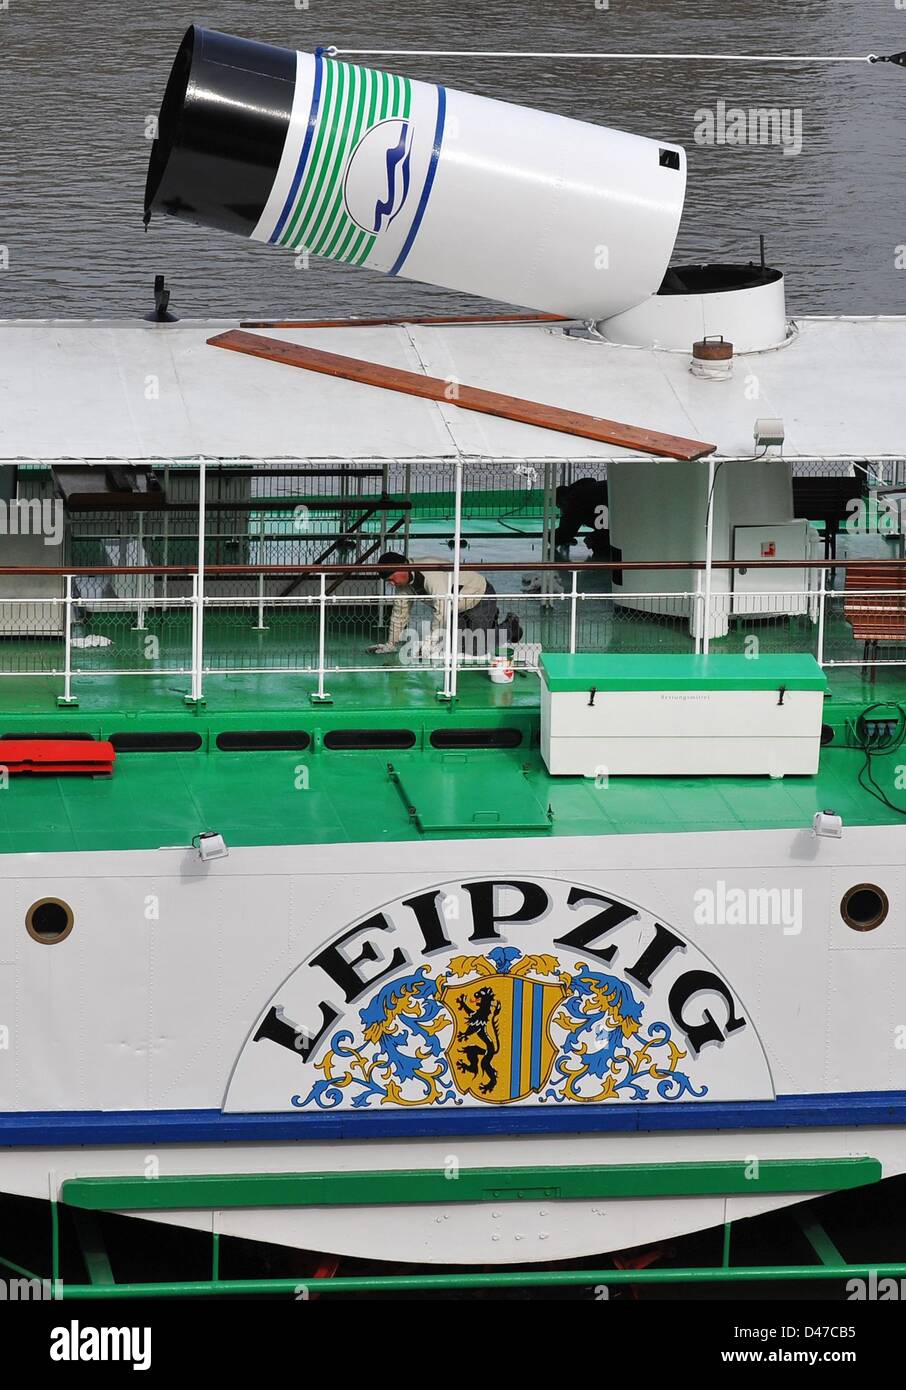 Los trabajadores de la empresa de Steamboat Saxon pintar el steamboat 'Leipzig' construido en 1929 a orillas del río Elba en Dresde (Alemania), 07 de marzo de 2013. Los barcos iniciará operaciones en el horario de verano el 28 de marzo de 2013. Foto: MATTHIAS HIEKEL Foto de stock